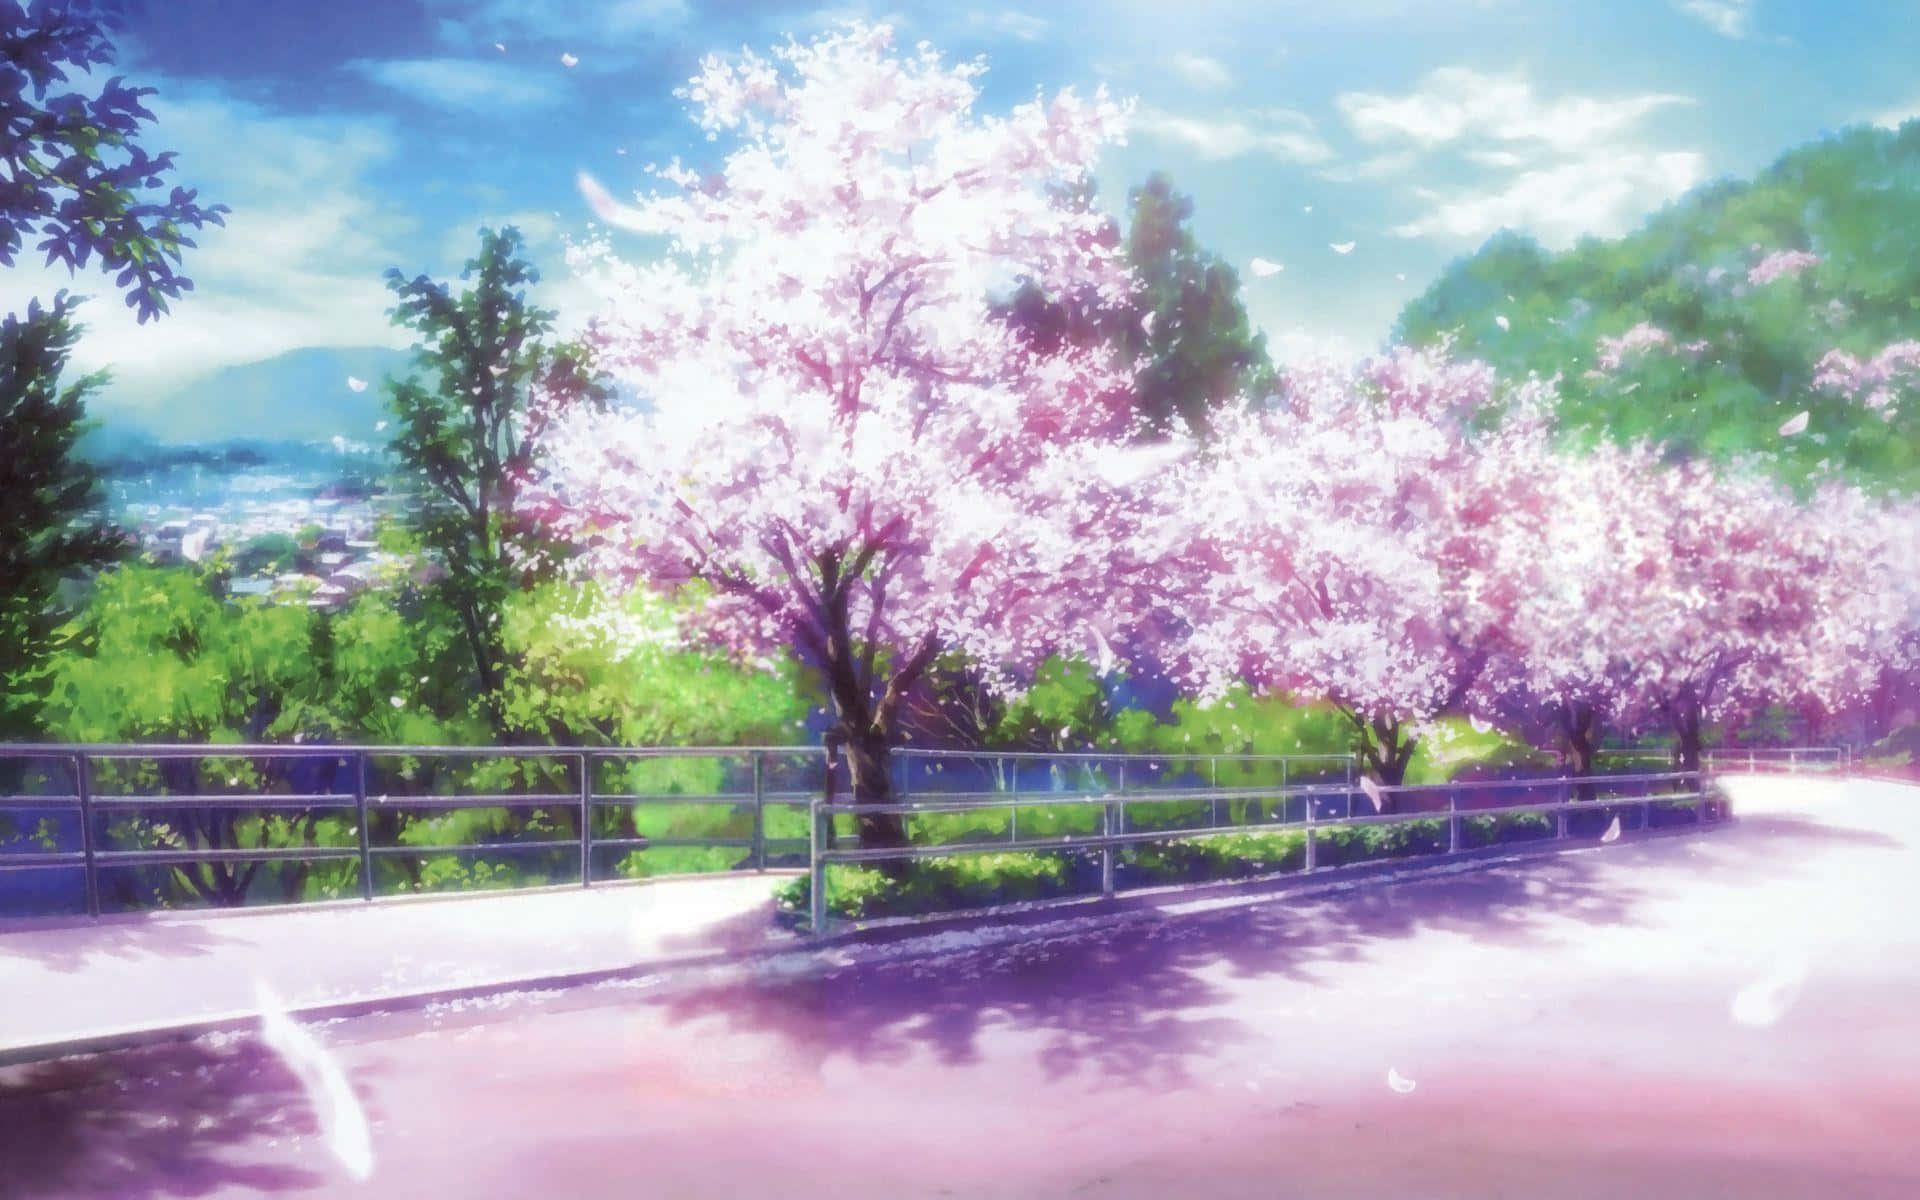 Daun Paseo Tranquilo Mientras Admiras La Belleza De Los Cerezos En Flor En Un Entorno De Anime Único. Fondo de pantalla